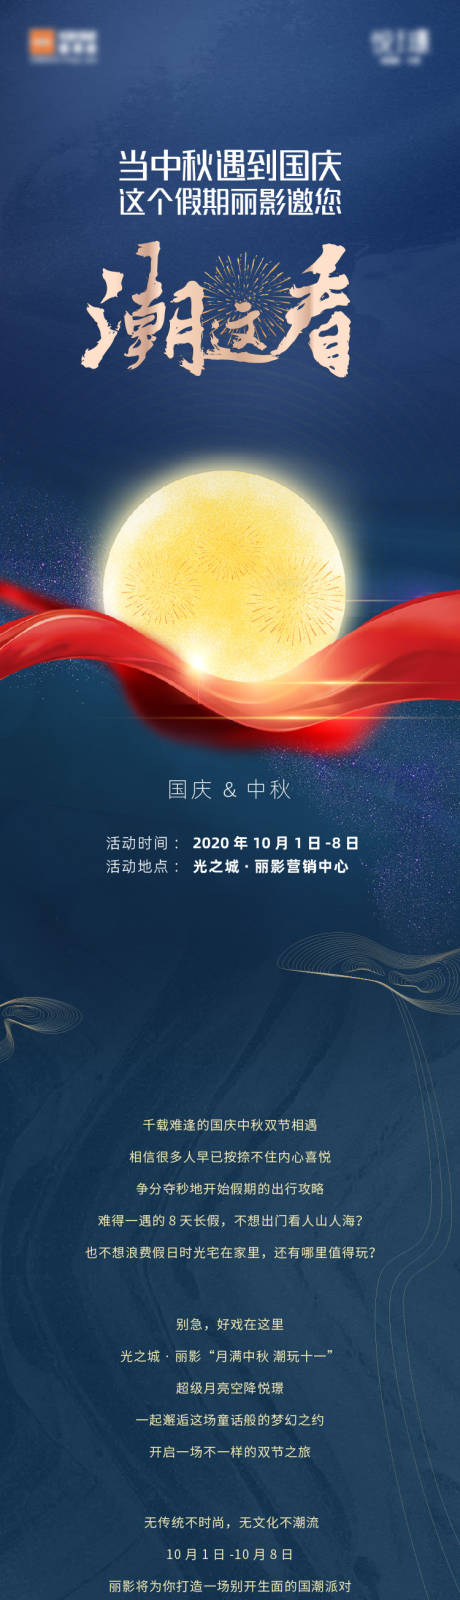 蓝色中式中秋节国庆节双节节日活动长图